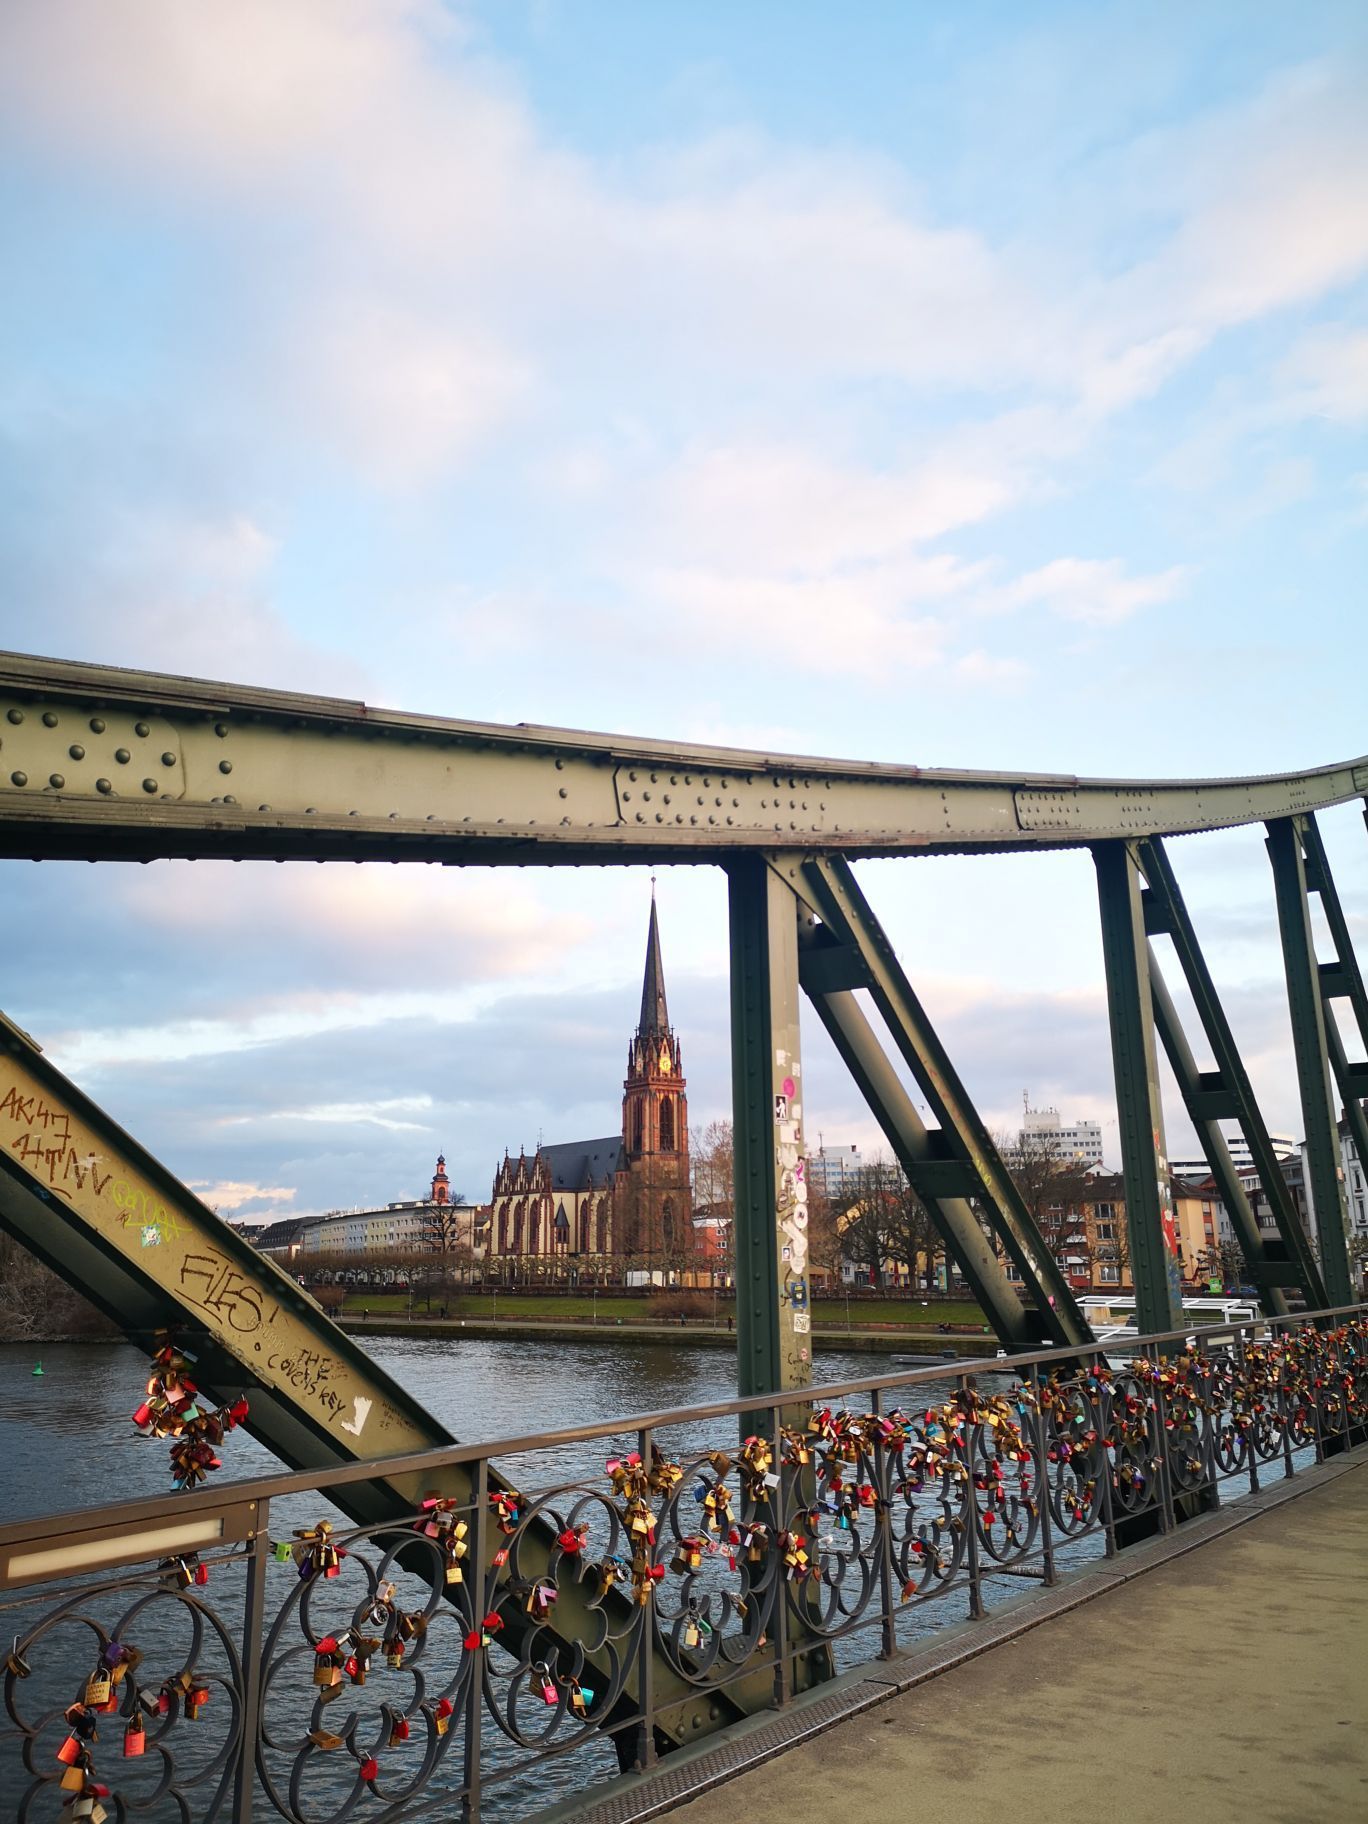 美茵河大桥图片